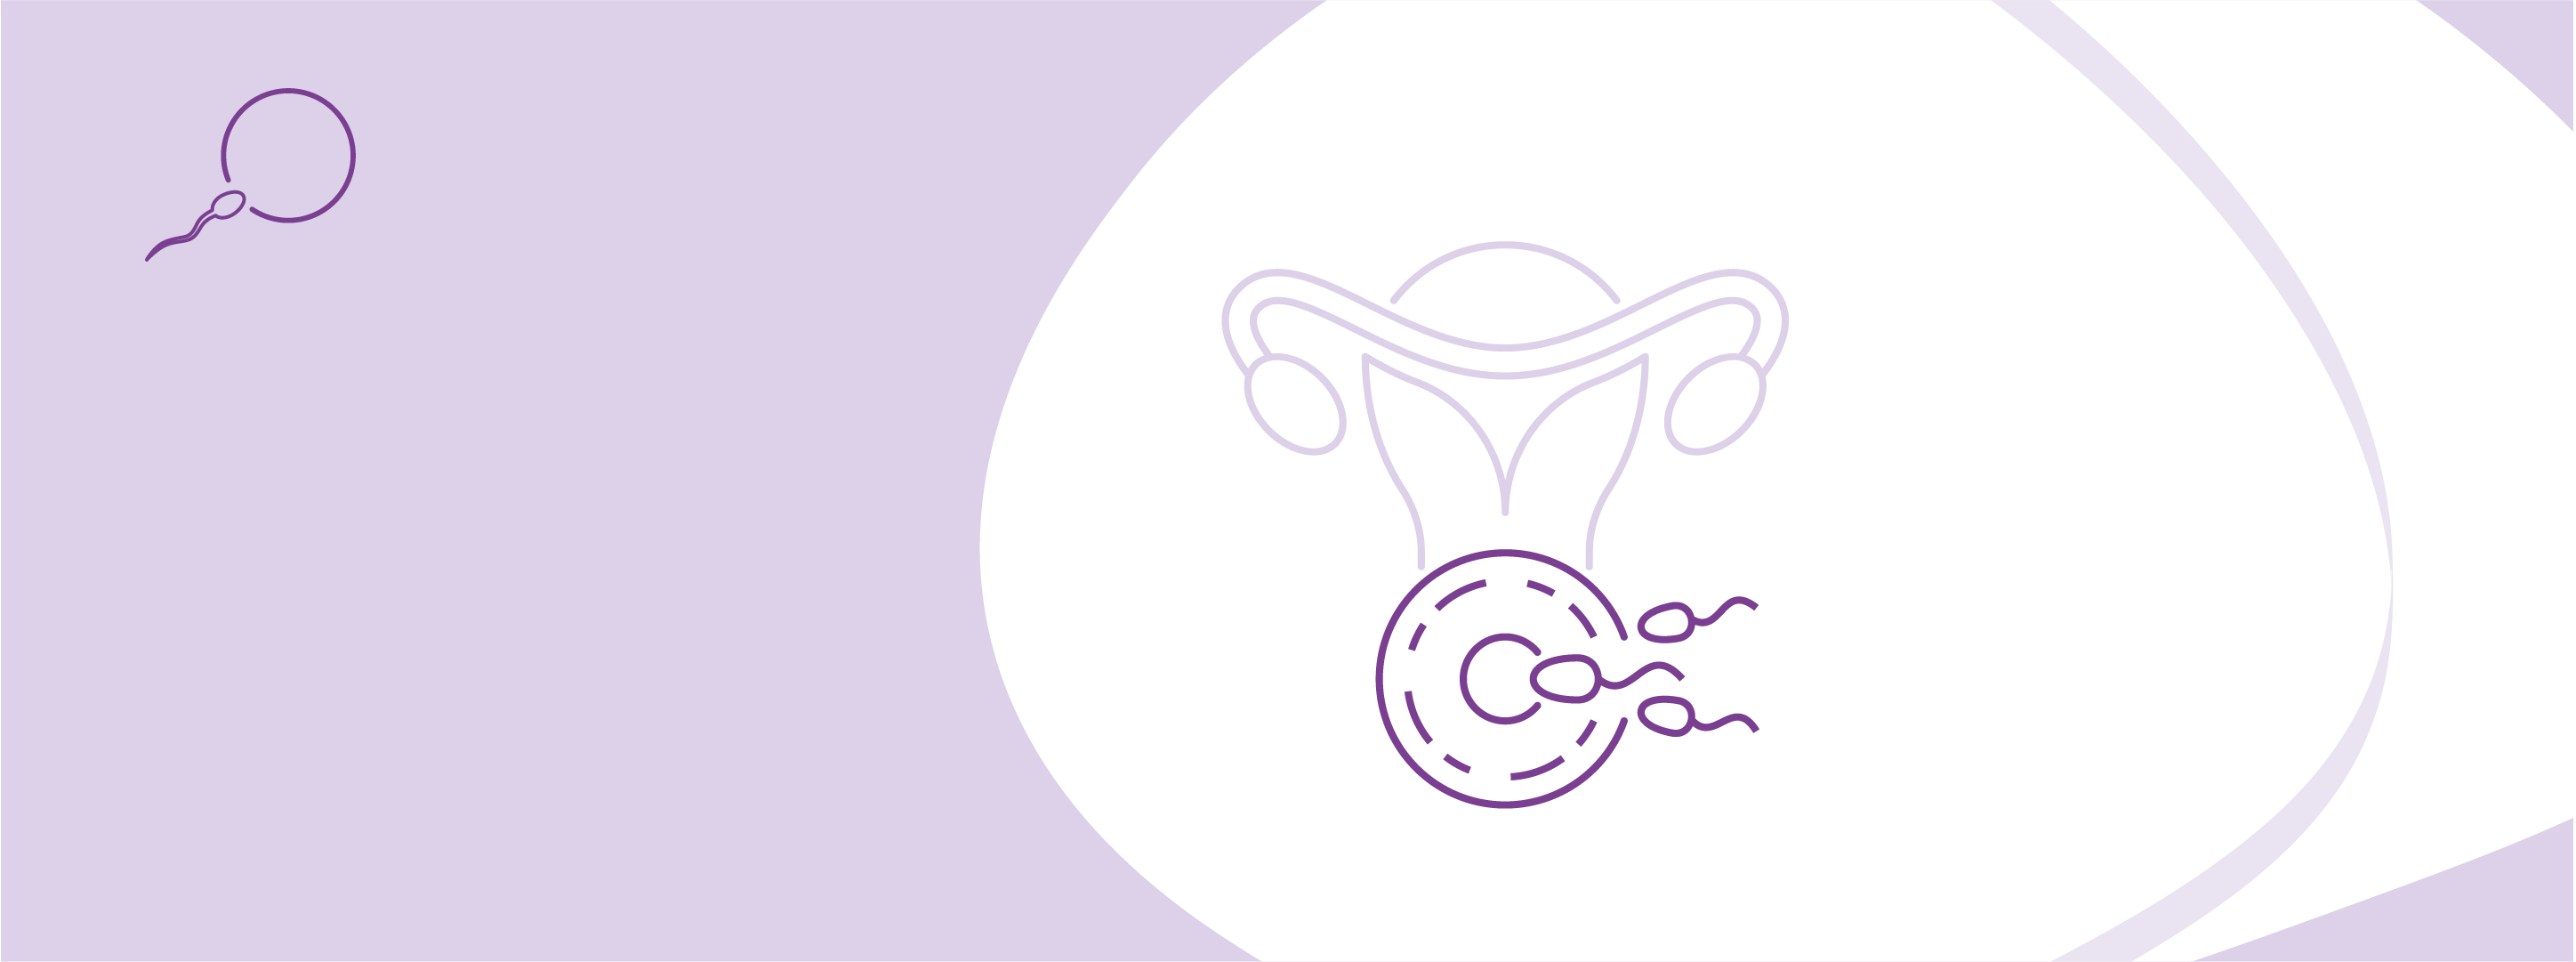 Програма ЕКЗ із донорськими яйцеклітинами за допомогою сурогатного материнства (до 8 яйцеклітин)